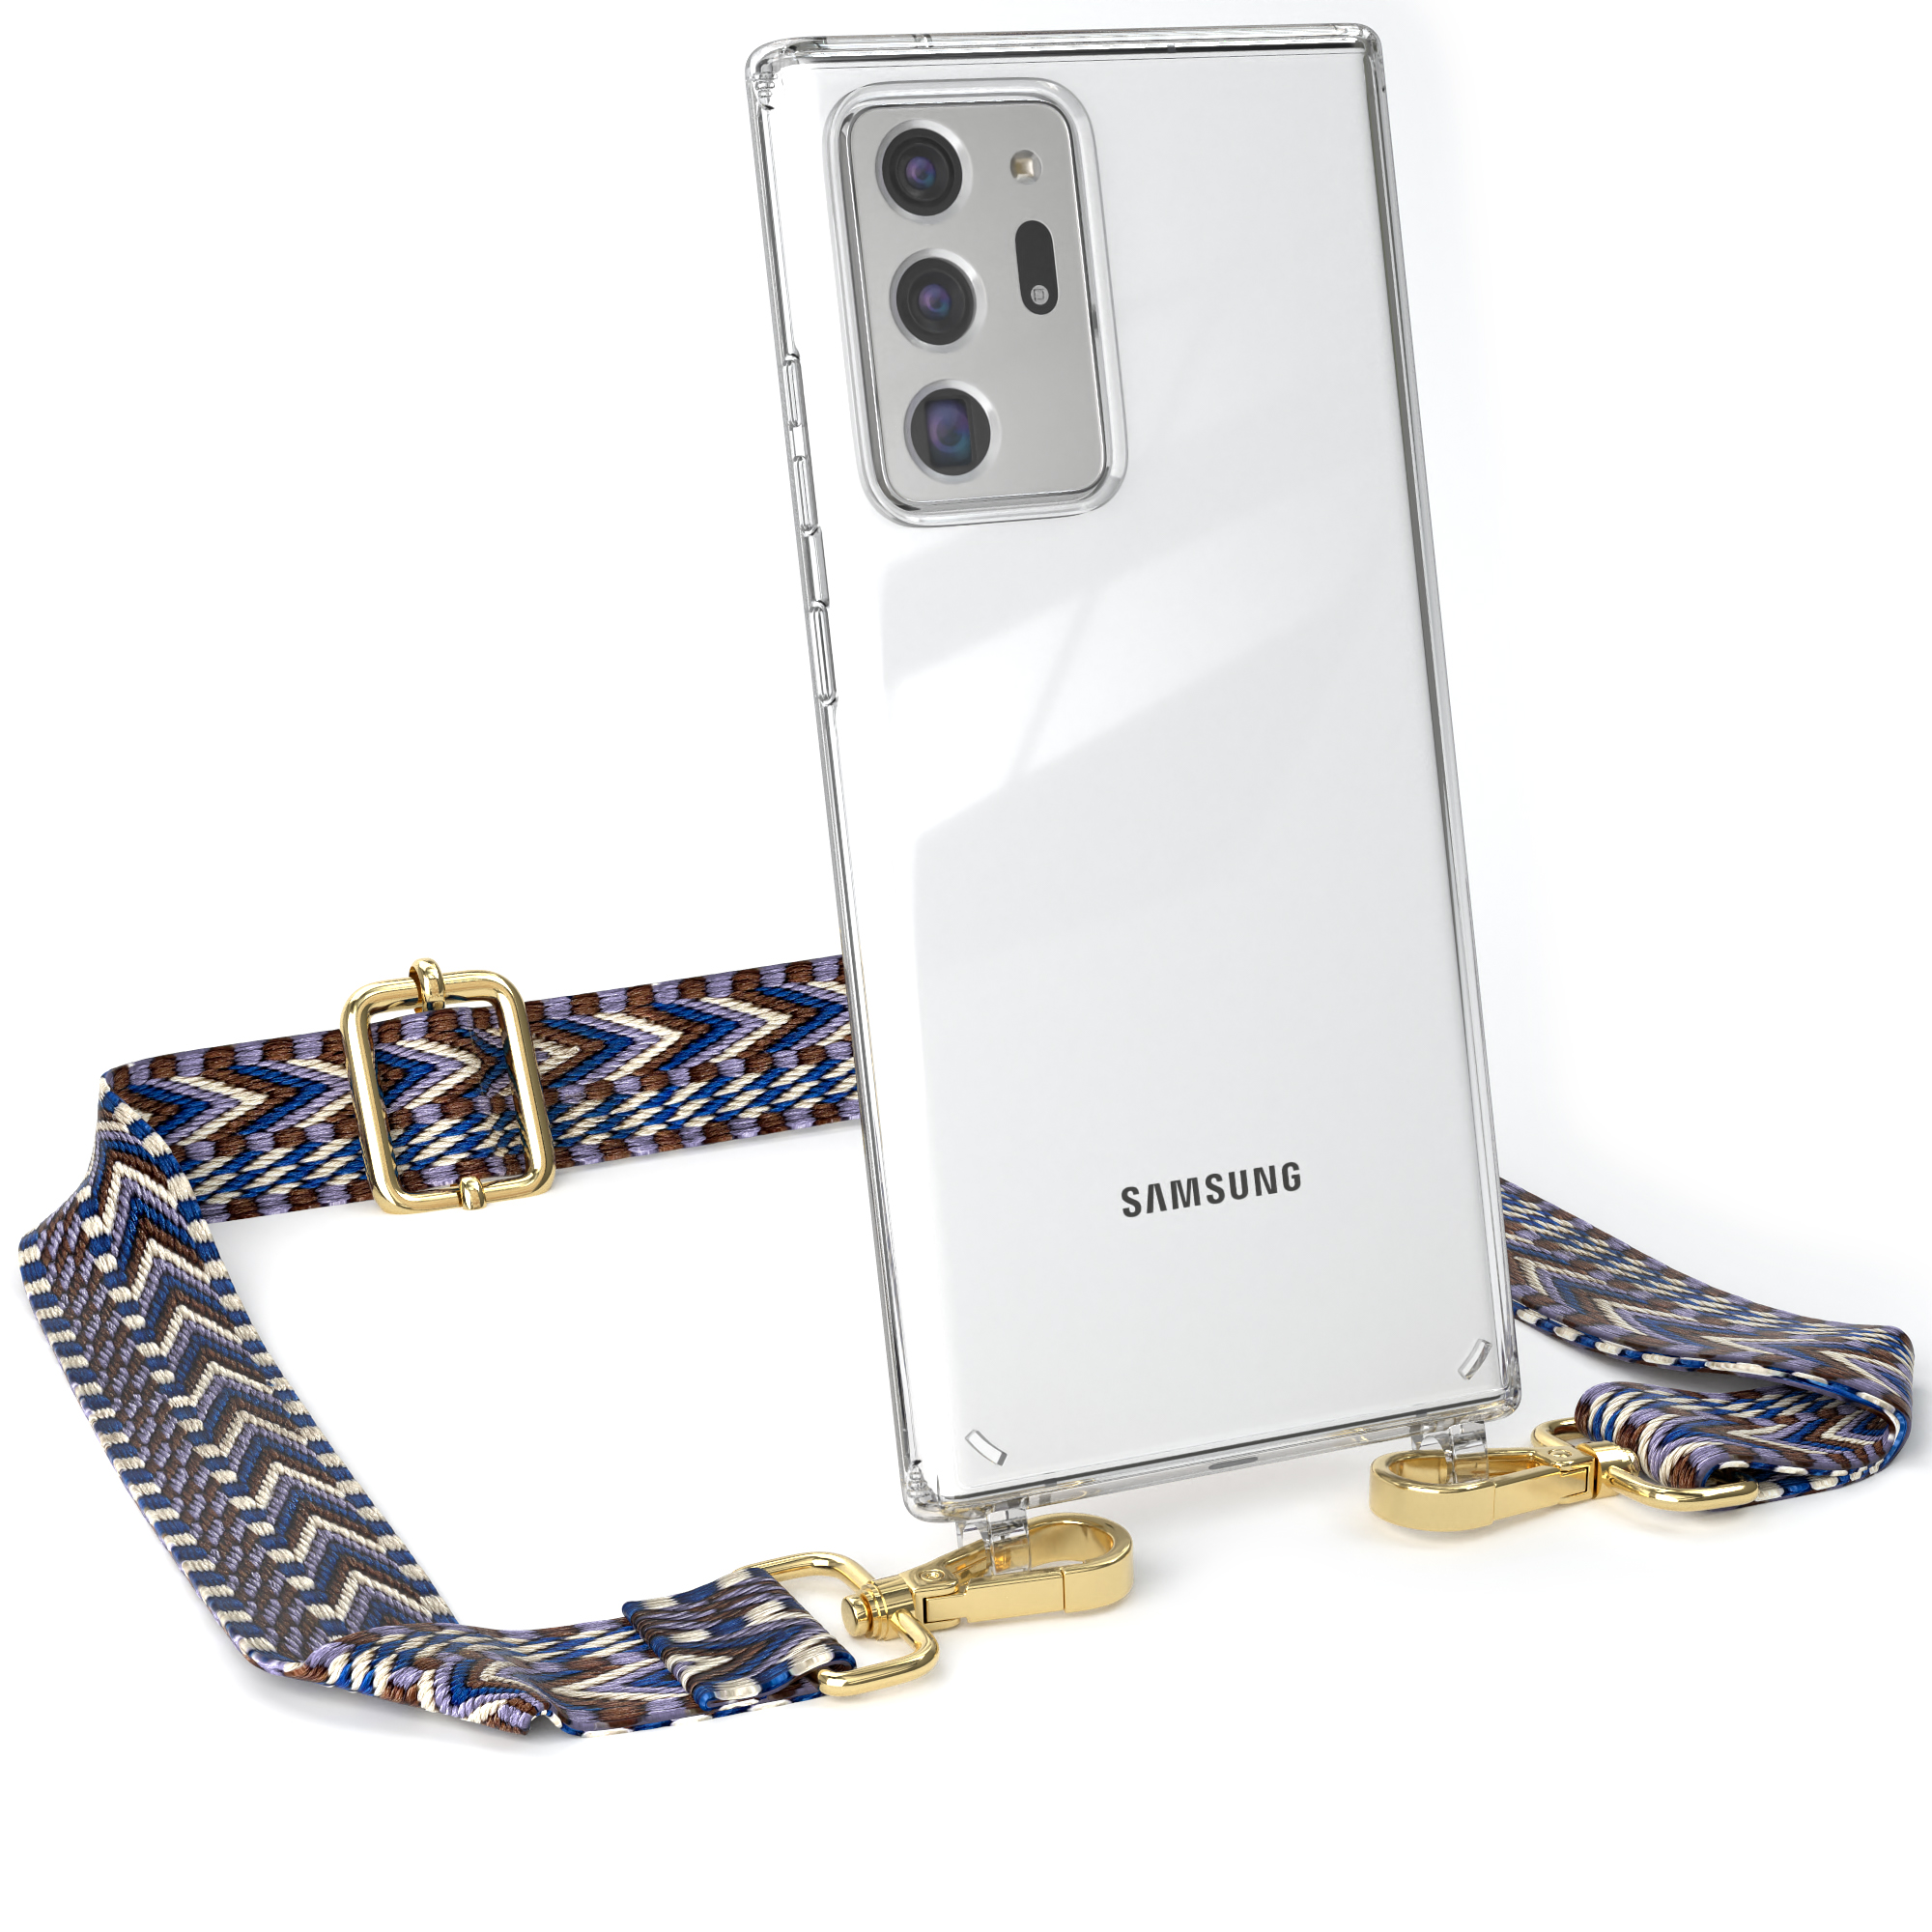 EAZY CASE Note 20 Kordel Umhängetasche, Style, Samsung, Galaxy Weiß 20 Note Boho Blau 5G, Transparente / Ultra / mit Handyhülle Ultra